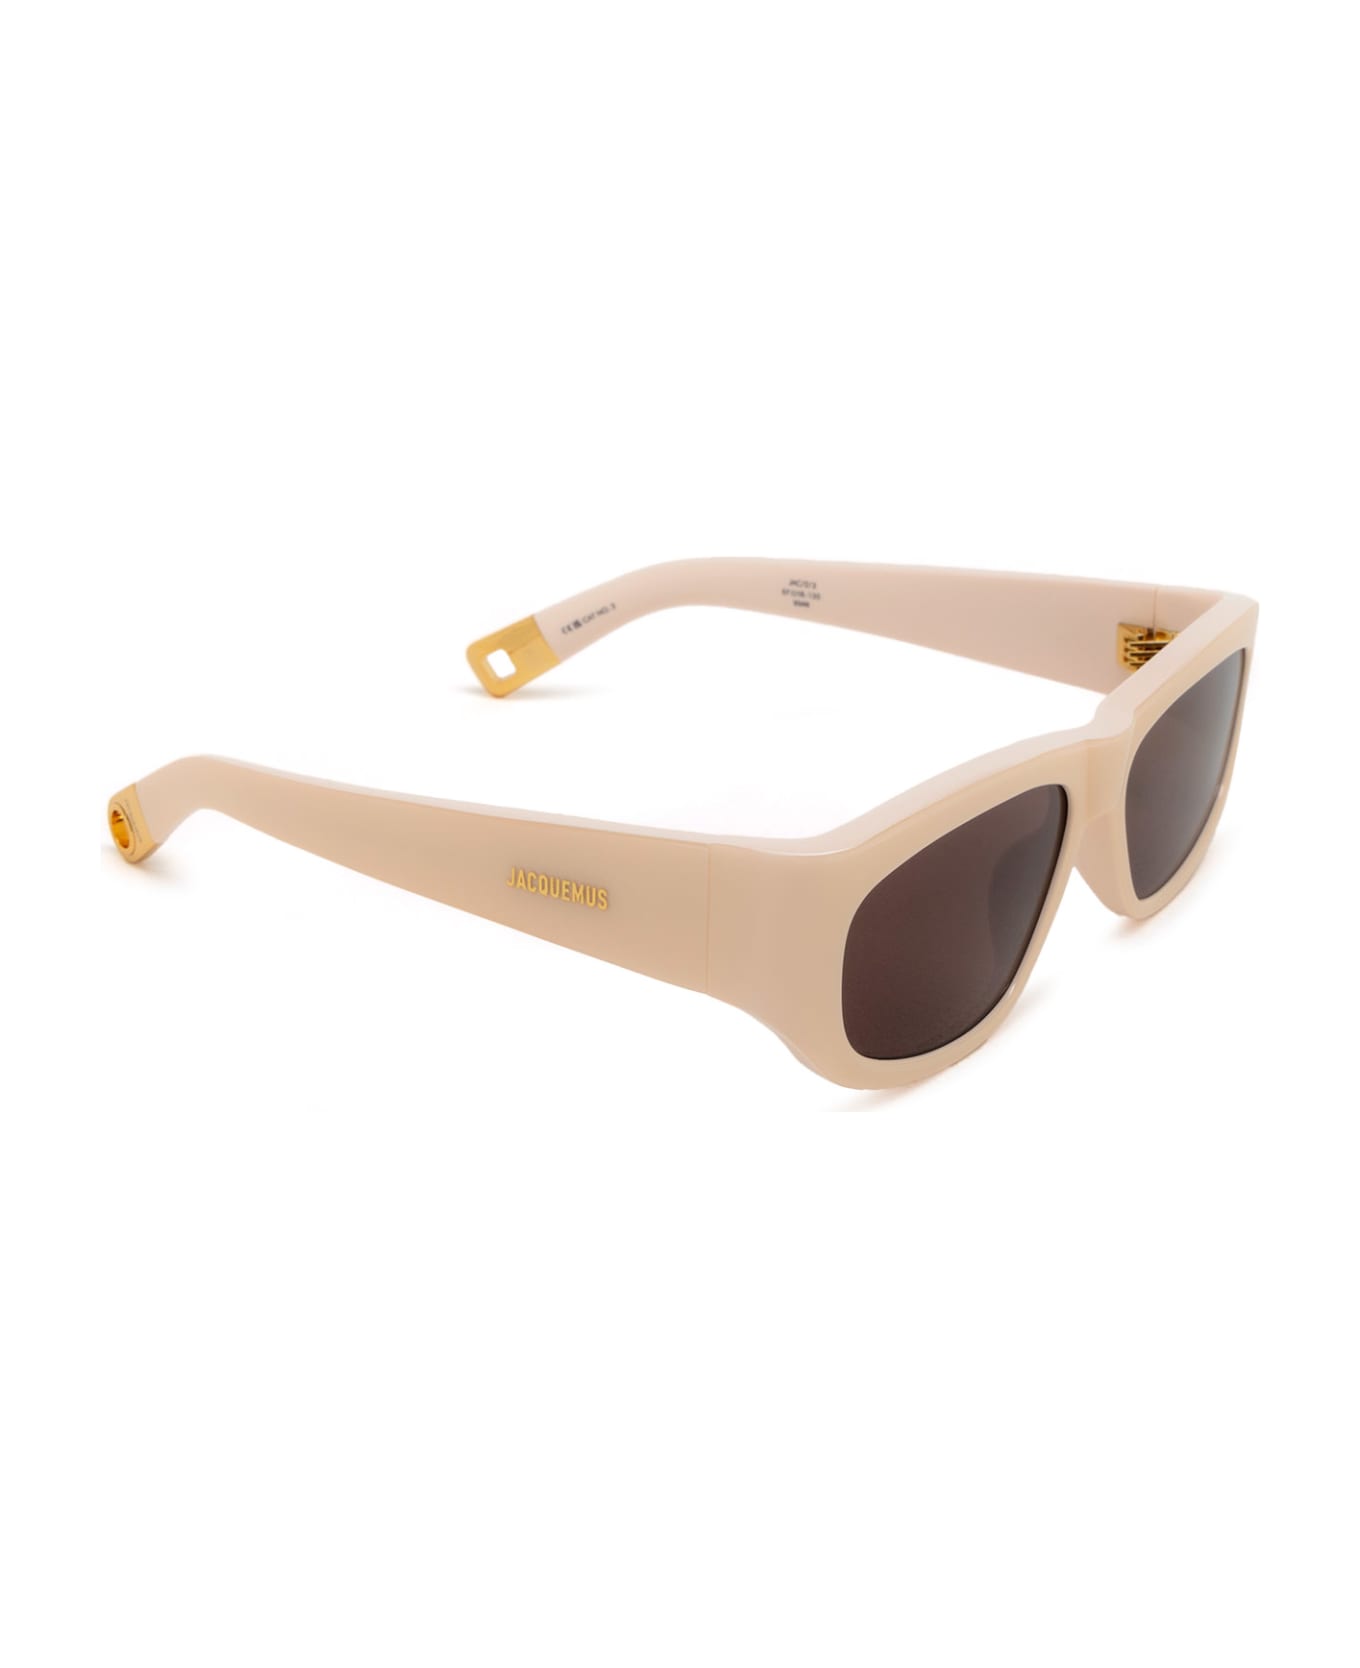 Jacquemus Jac2 Cream Sunglasses - Cream